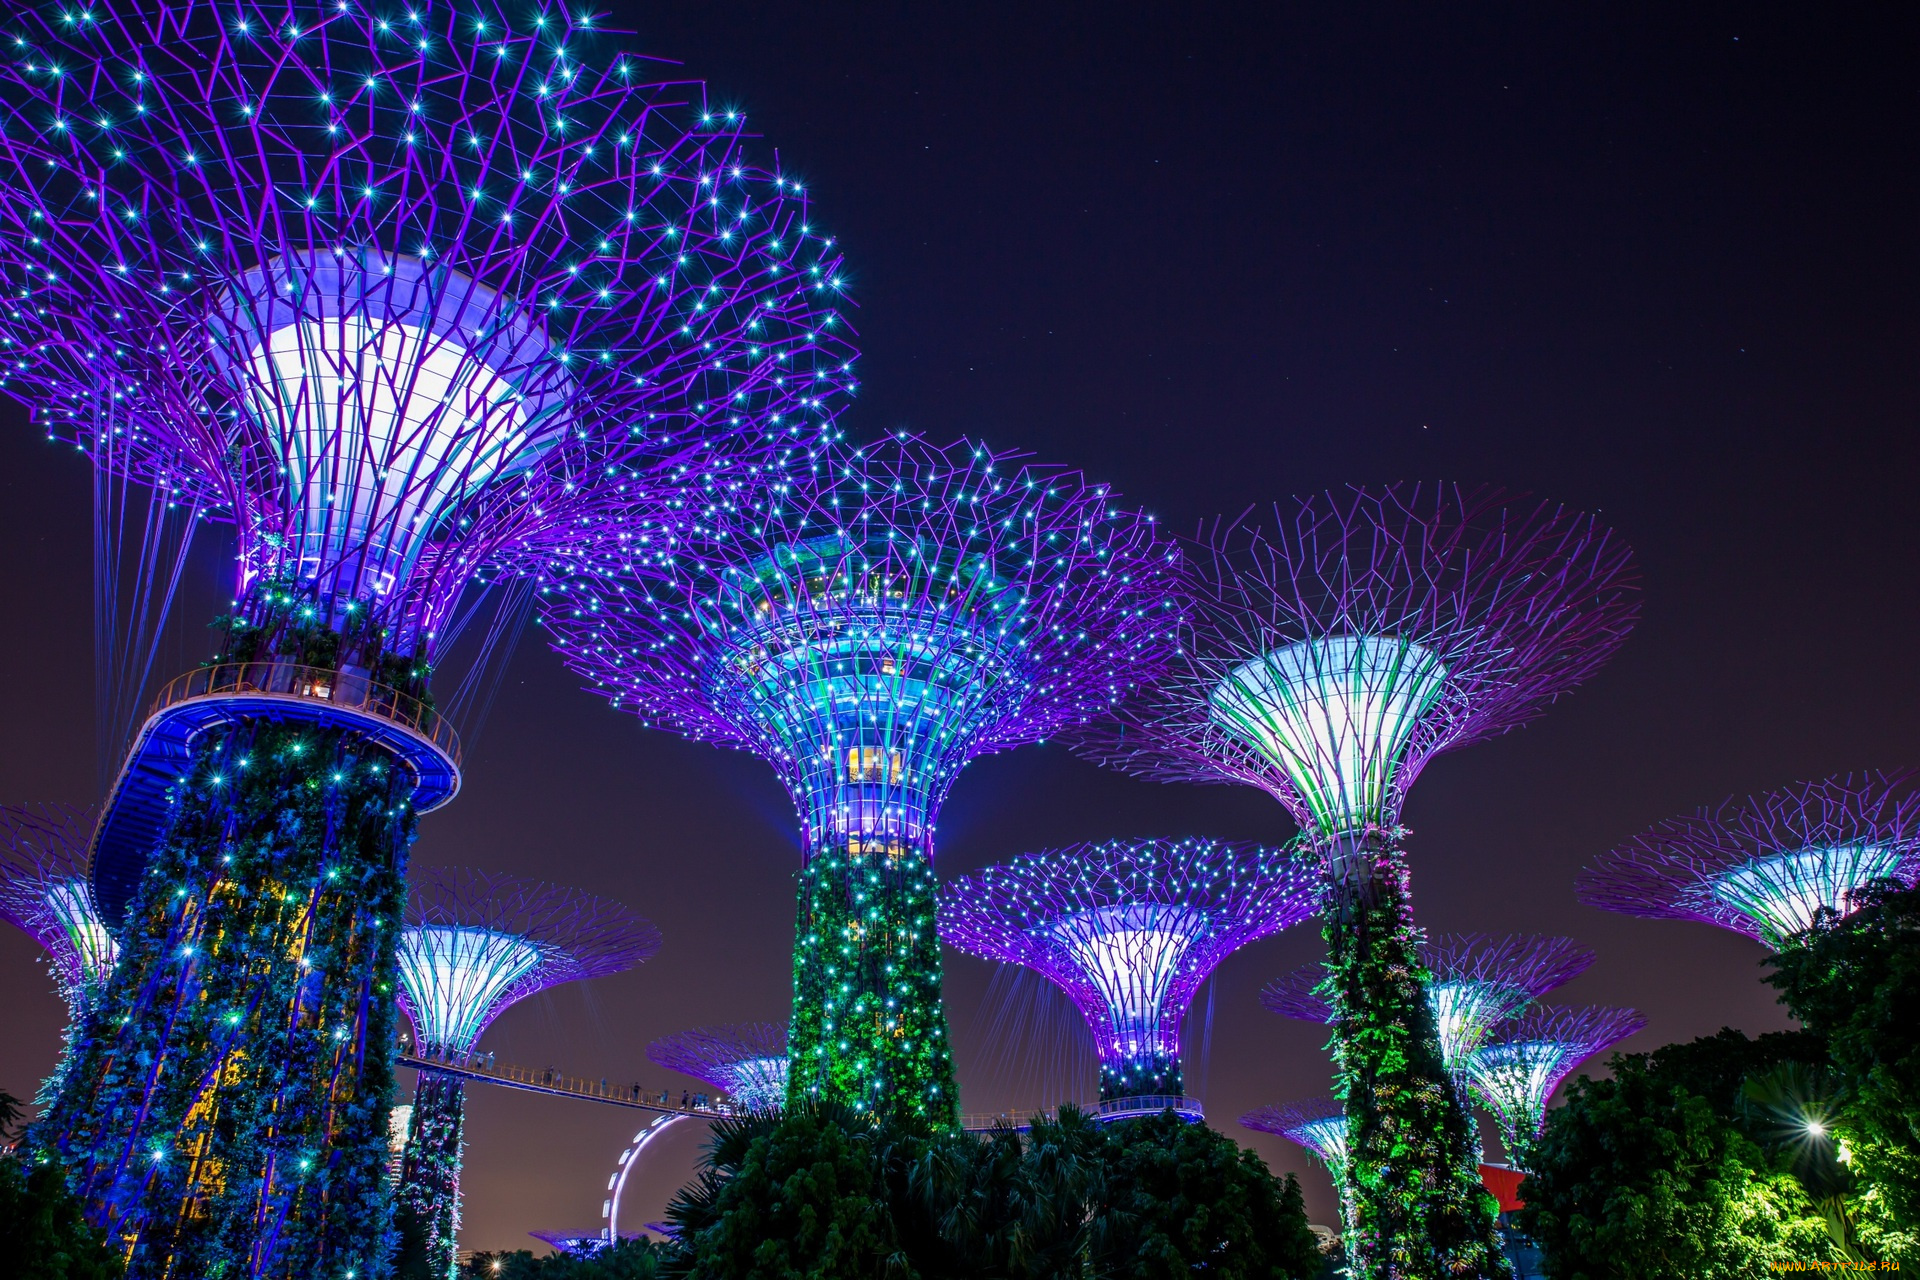 сингапур, разное, иллюминация, фонари, деревья, освещение